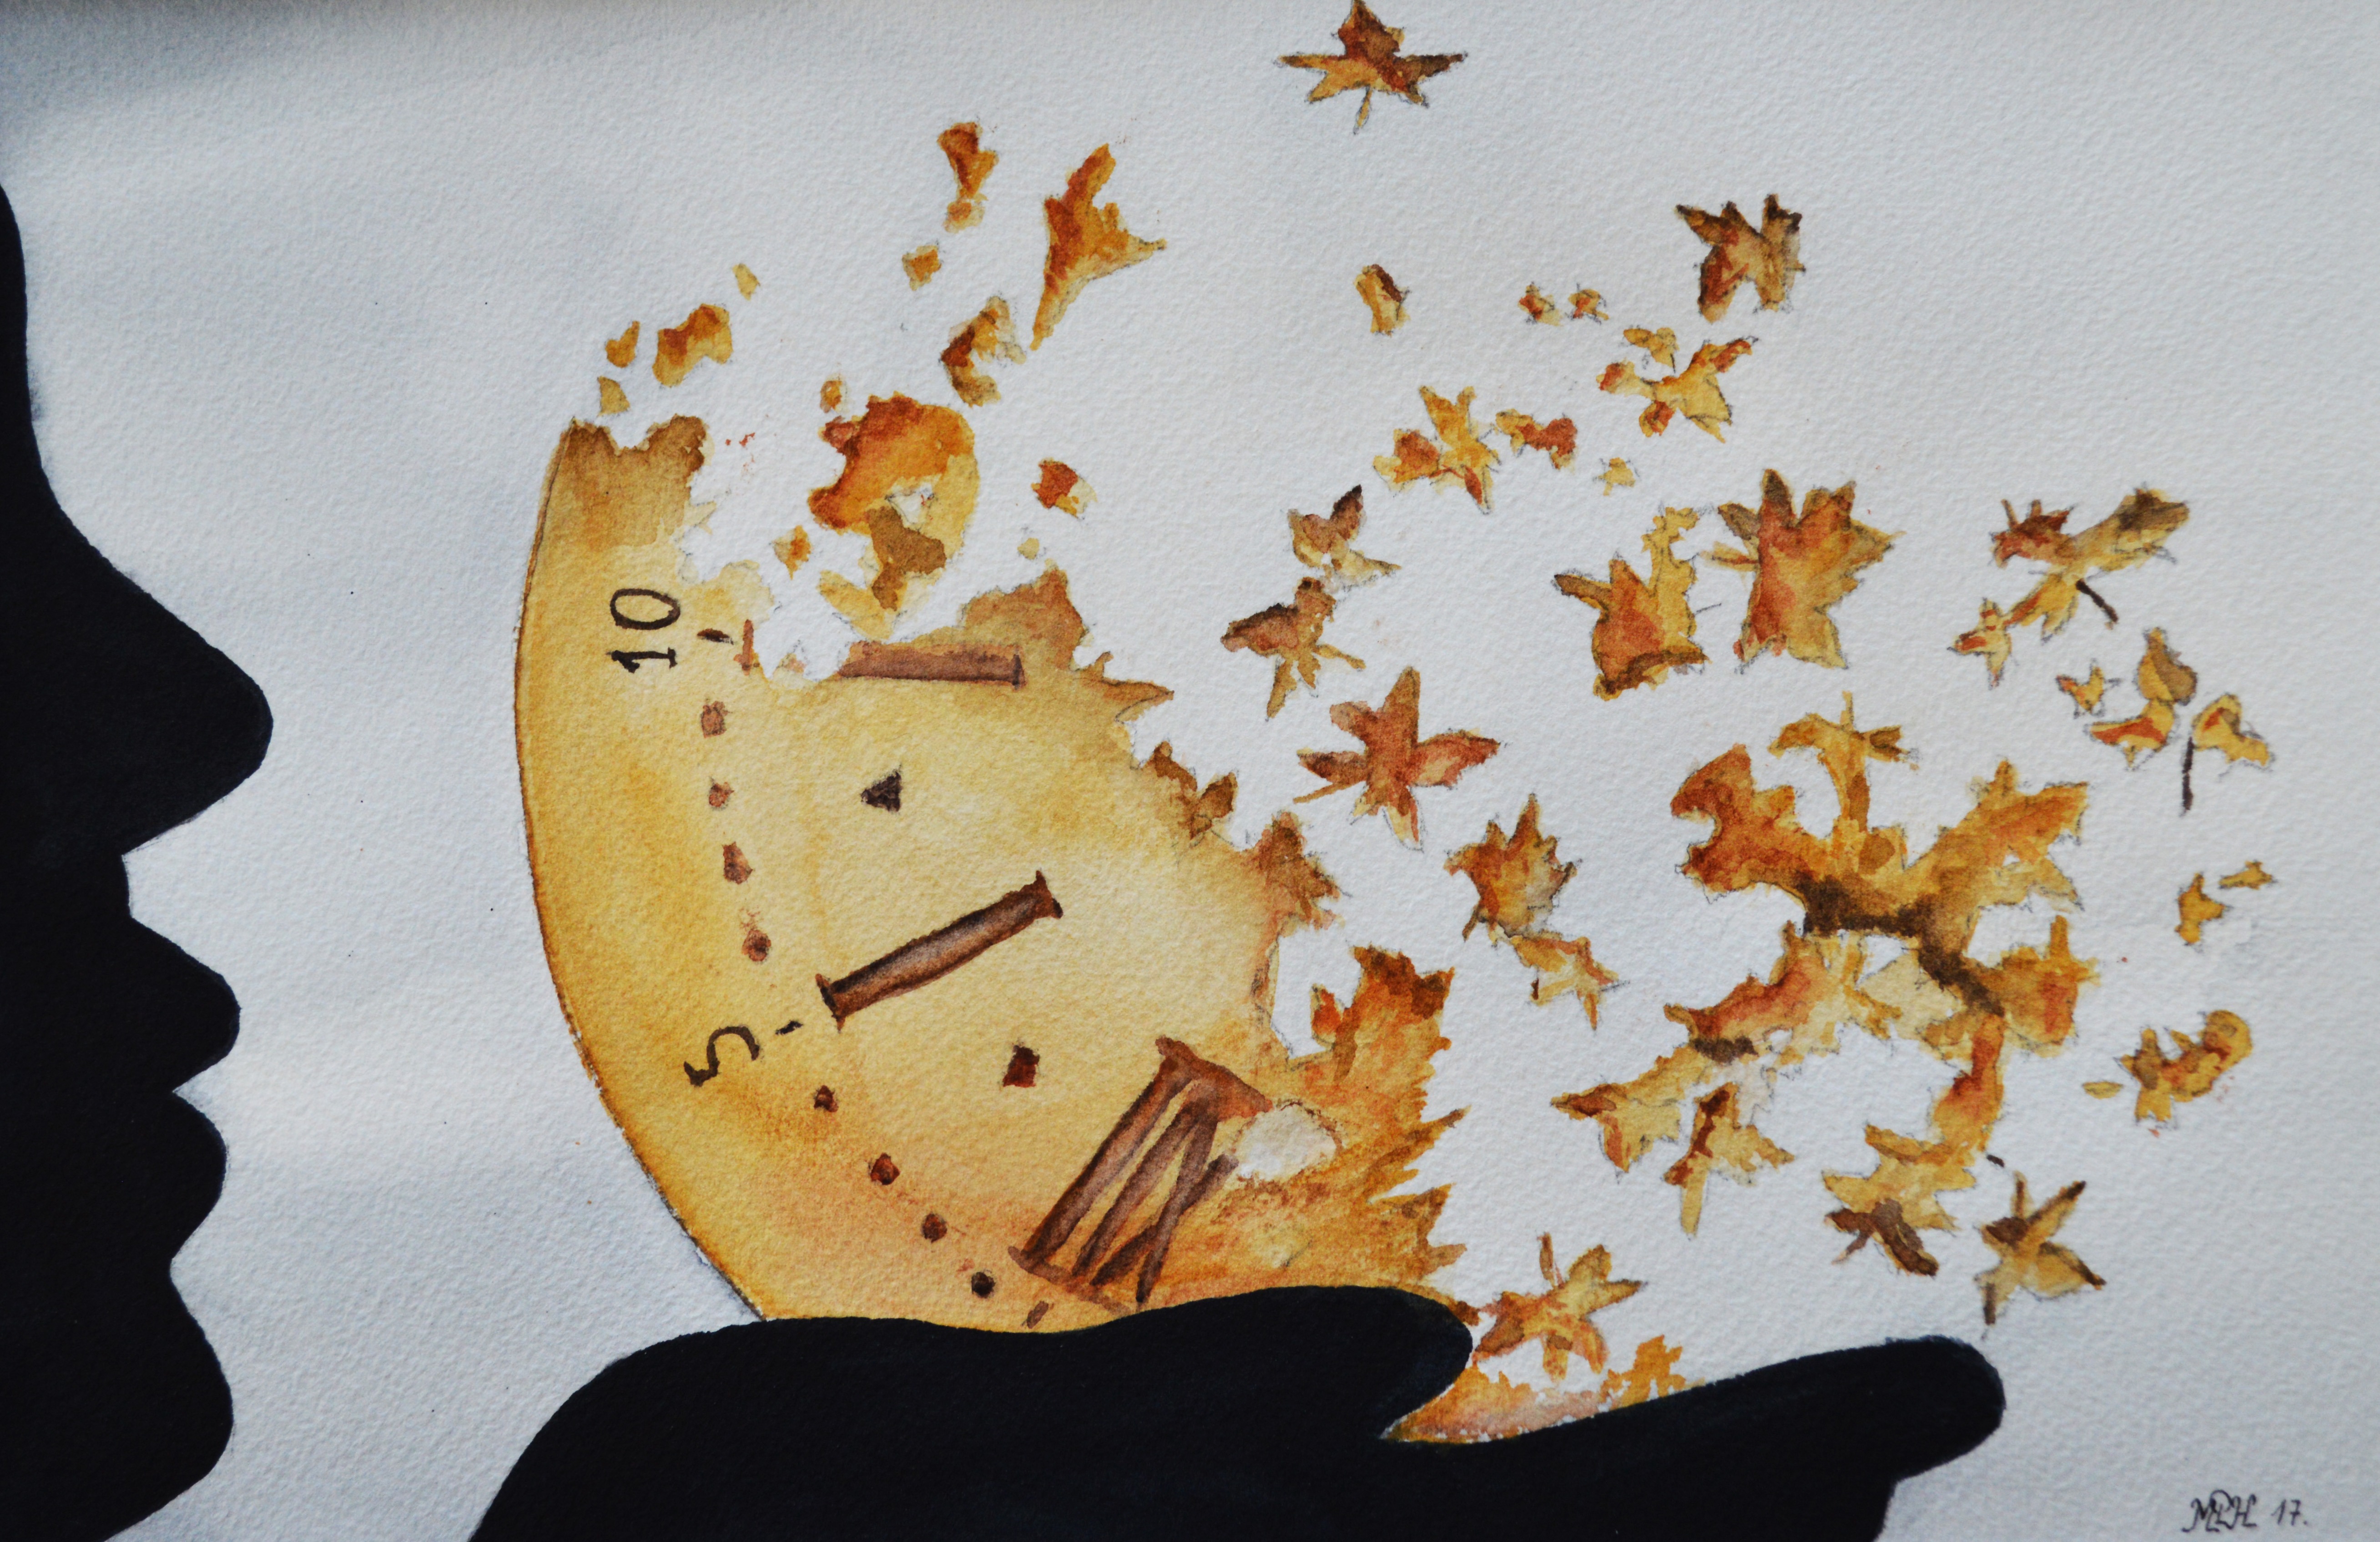 Aquarelle n°111: "Le temps emporté par le vent"